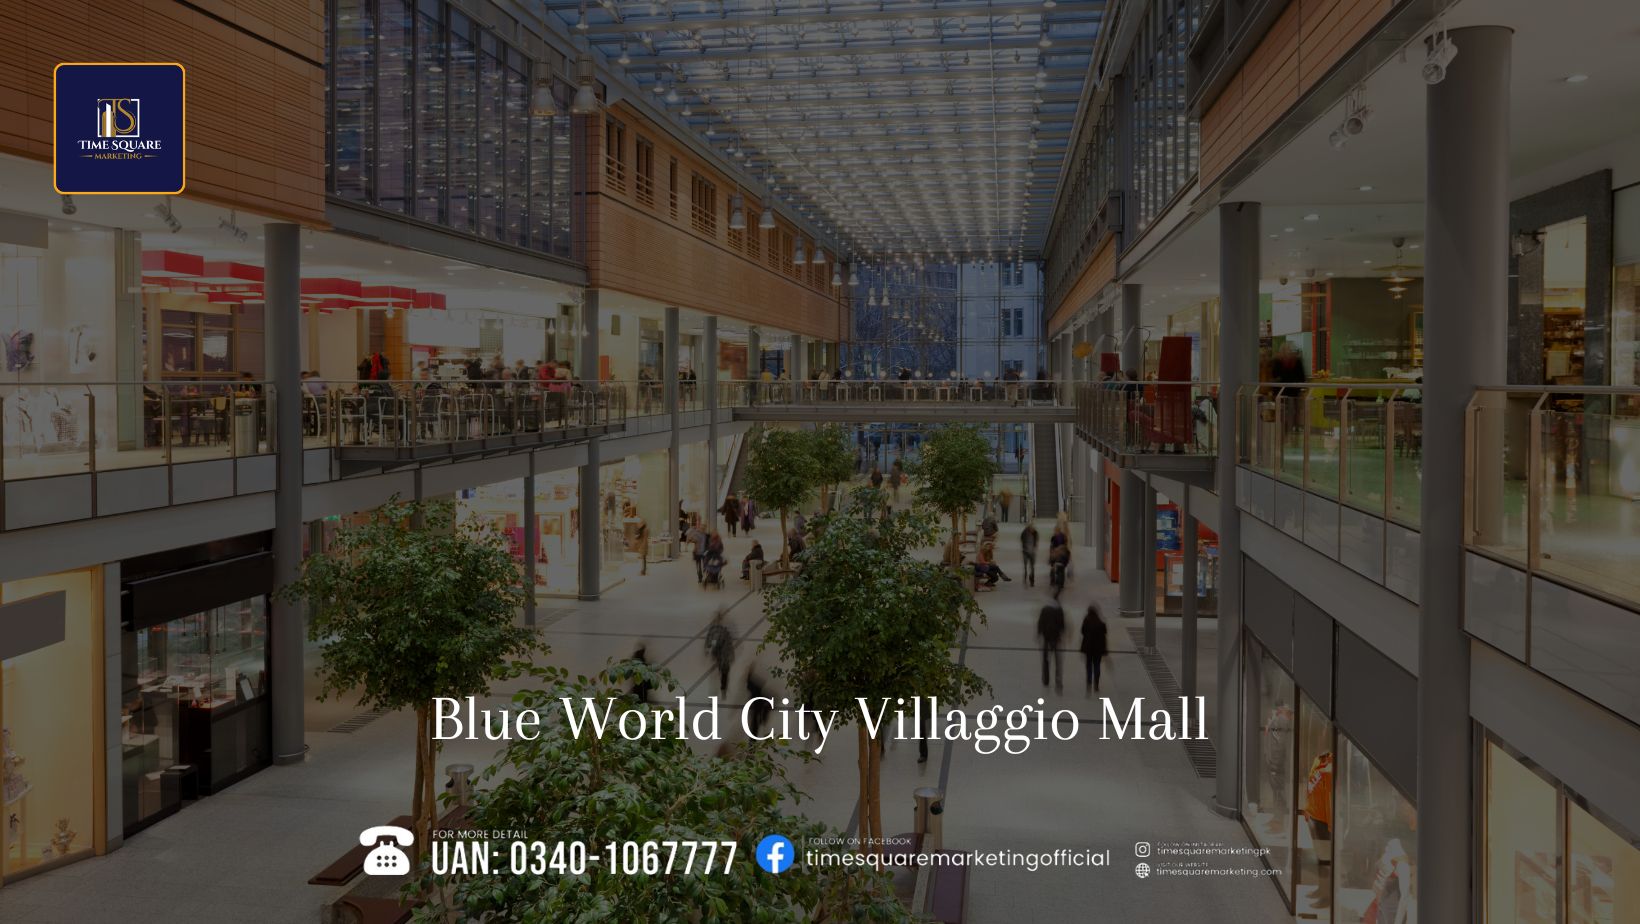 Villaggio Mall at Blue World City